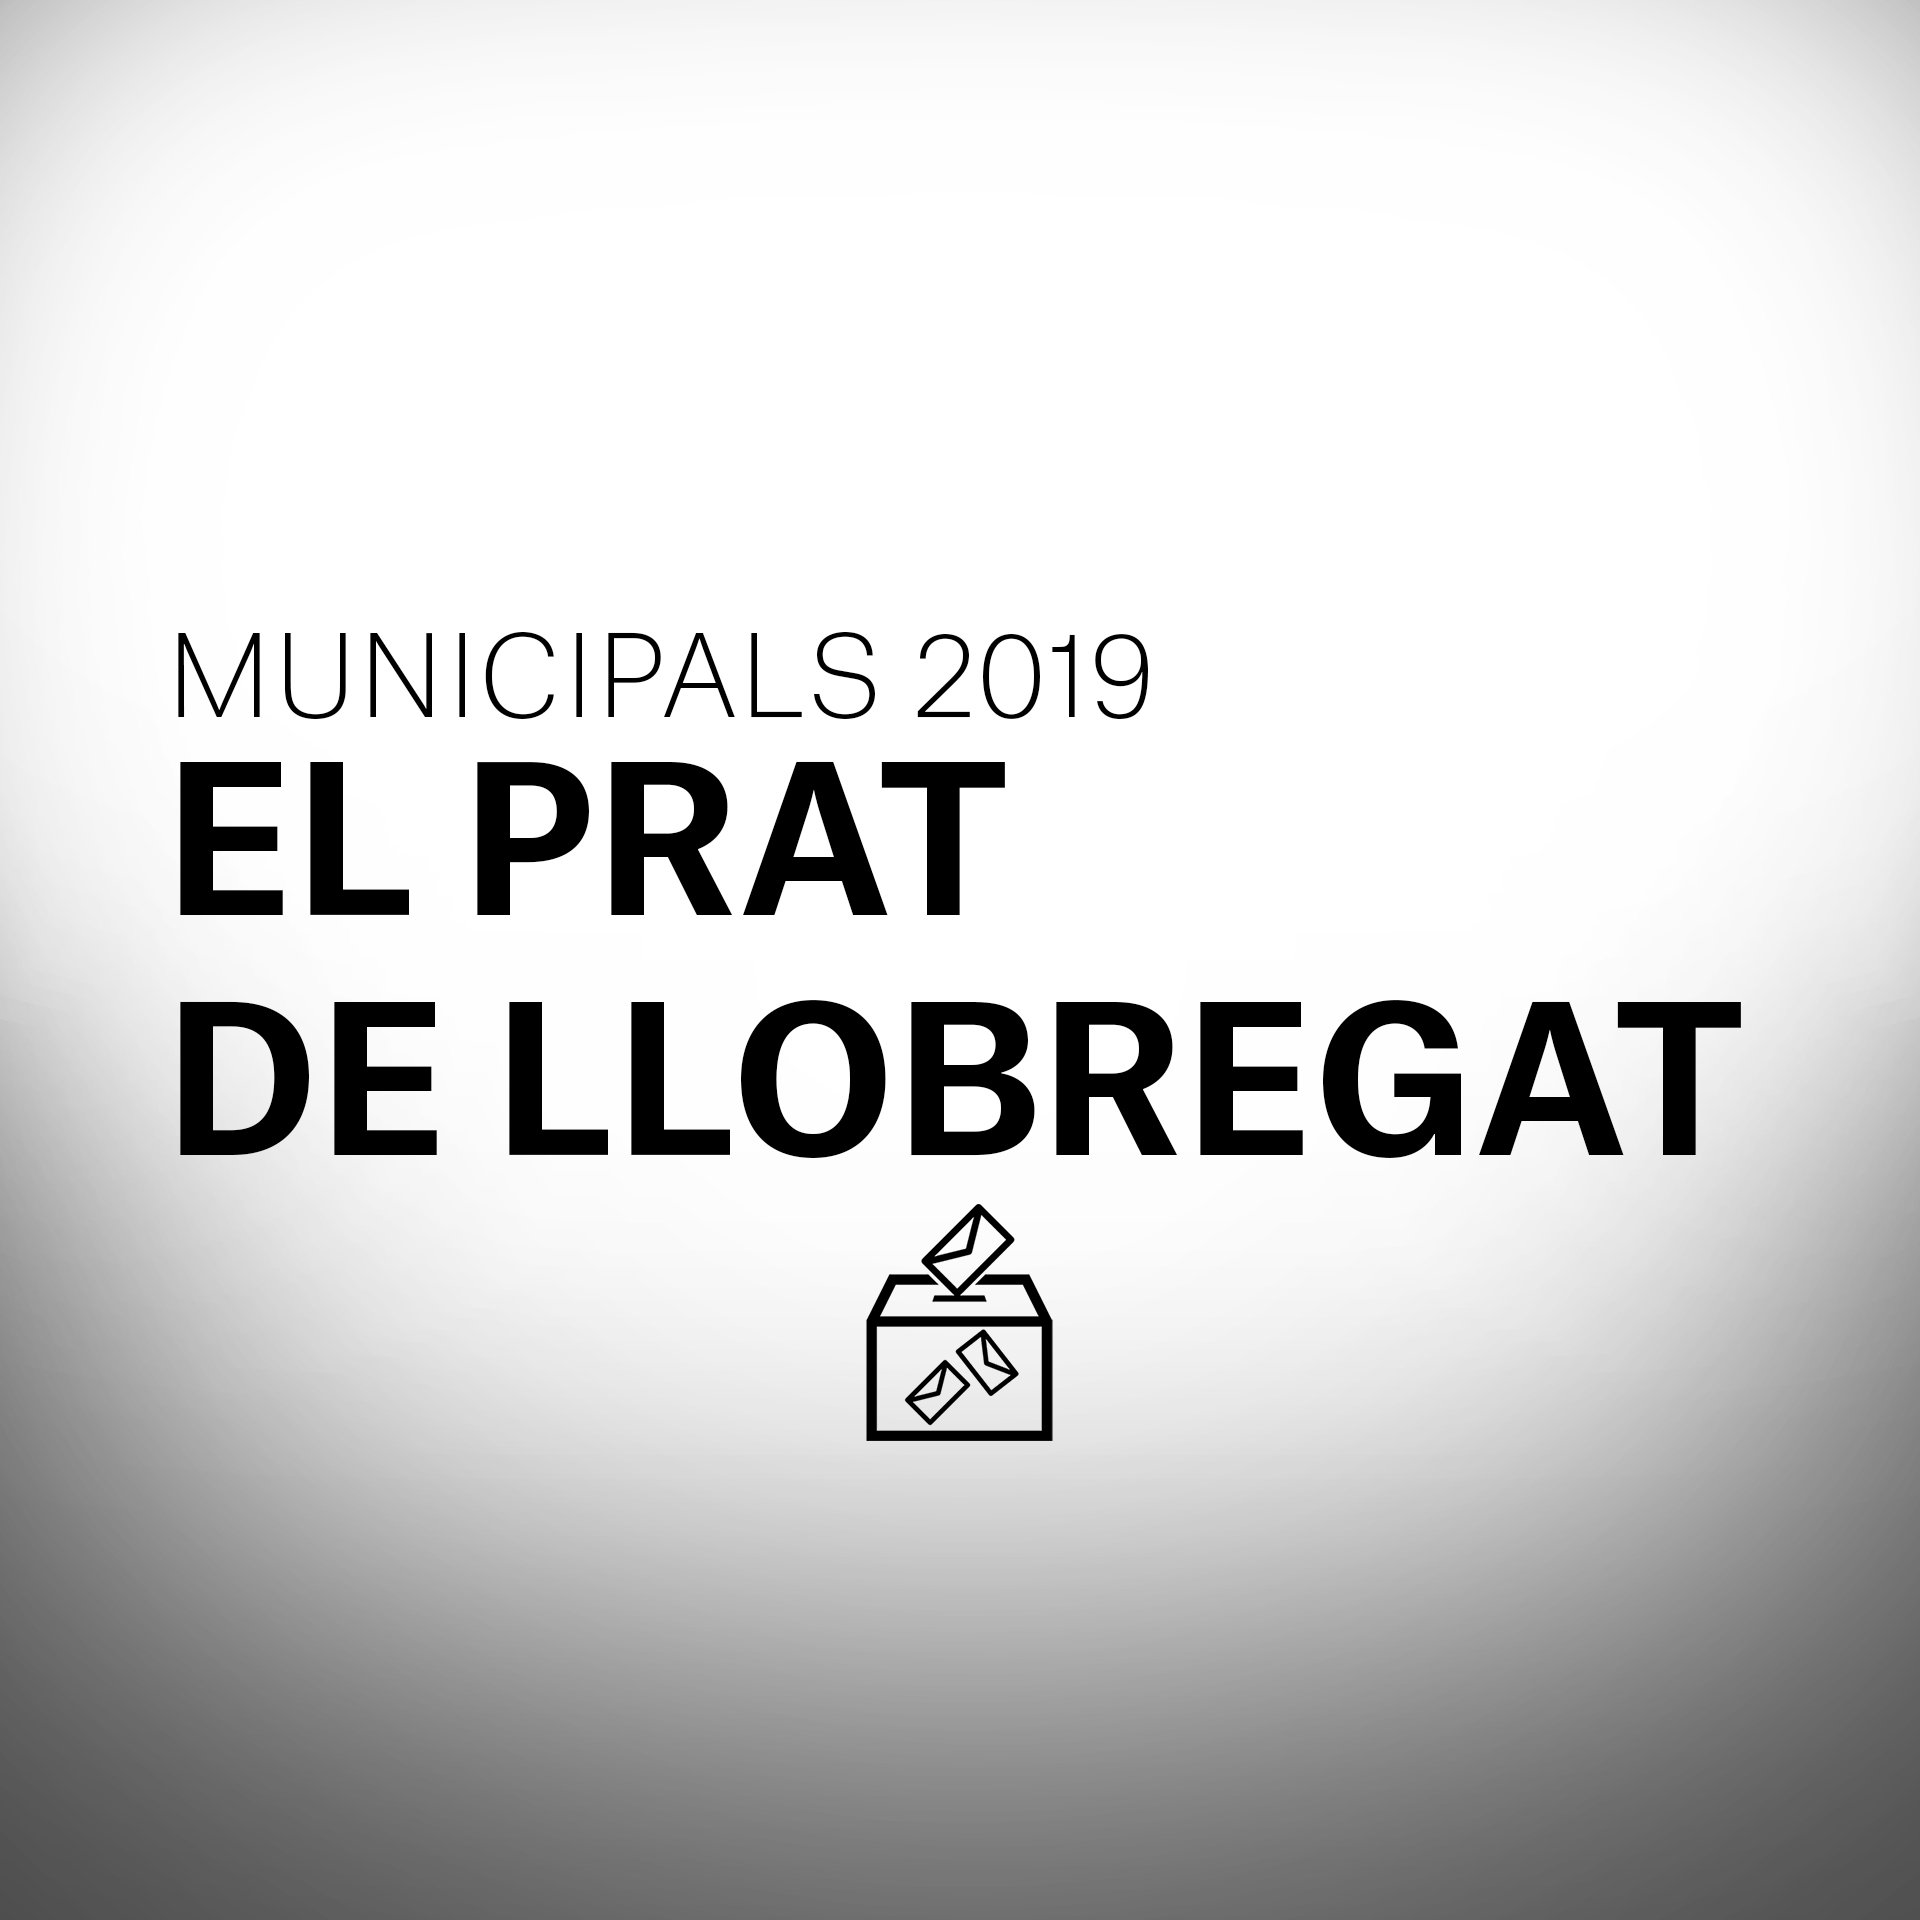 Què passarà a les eleccions municipals al Prat de Llobregat?